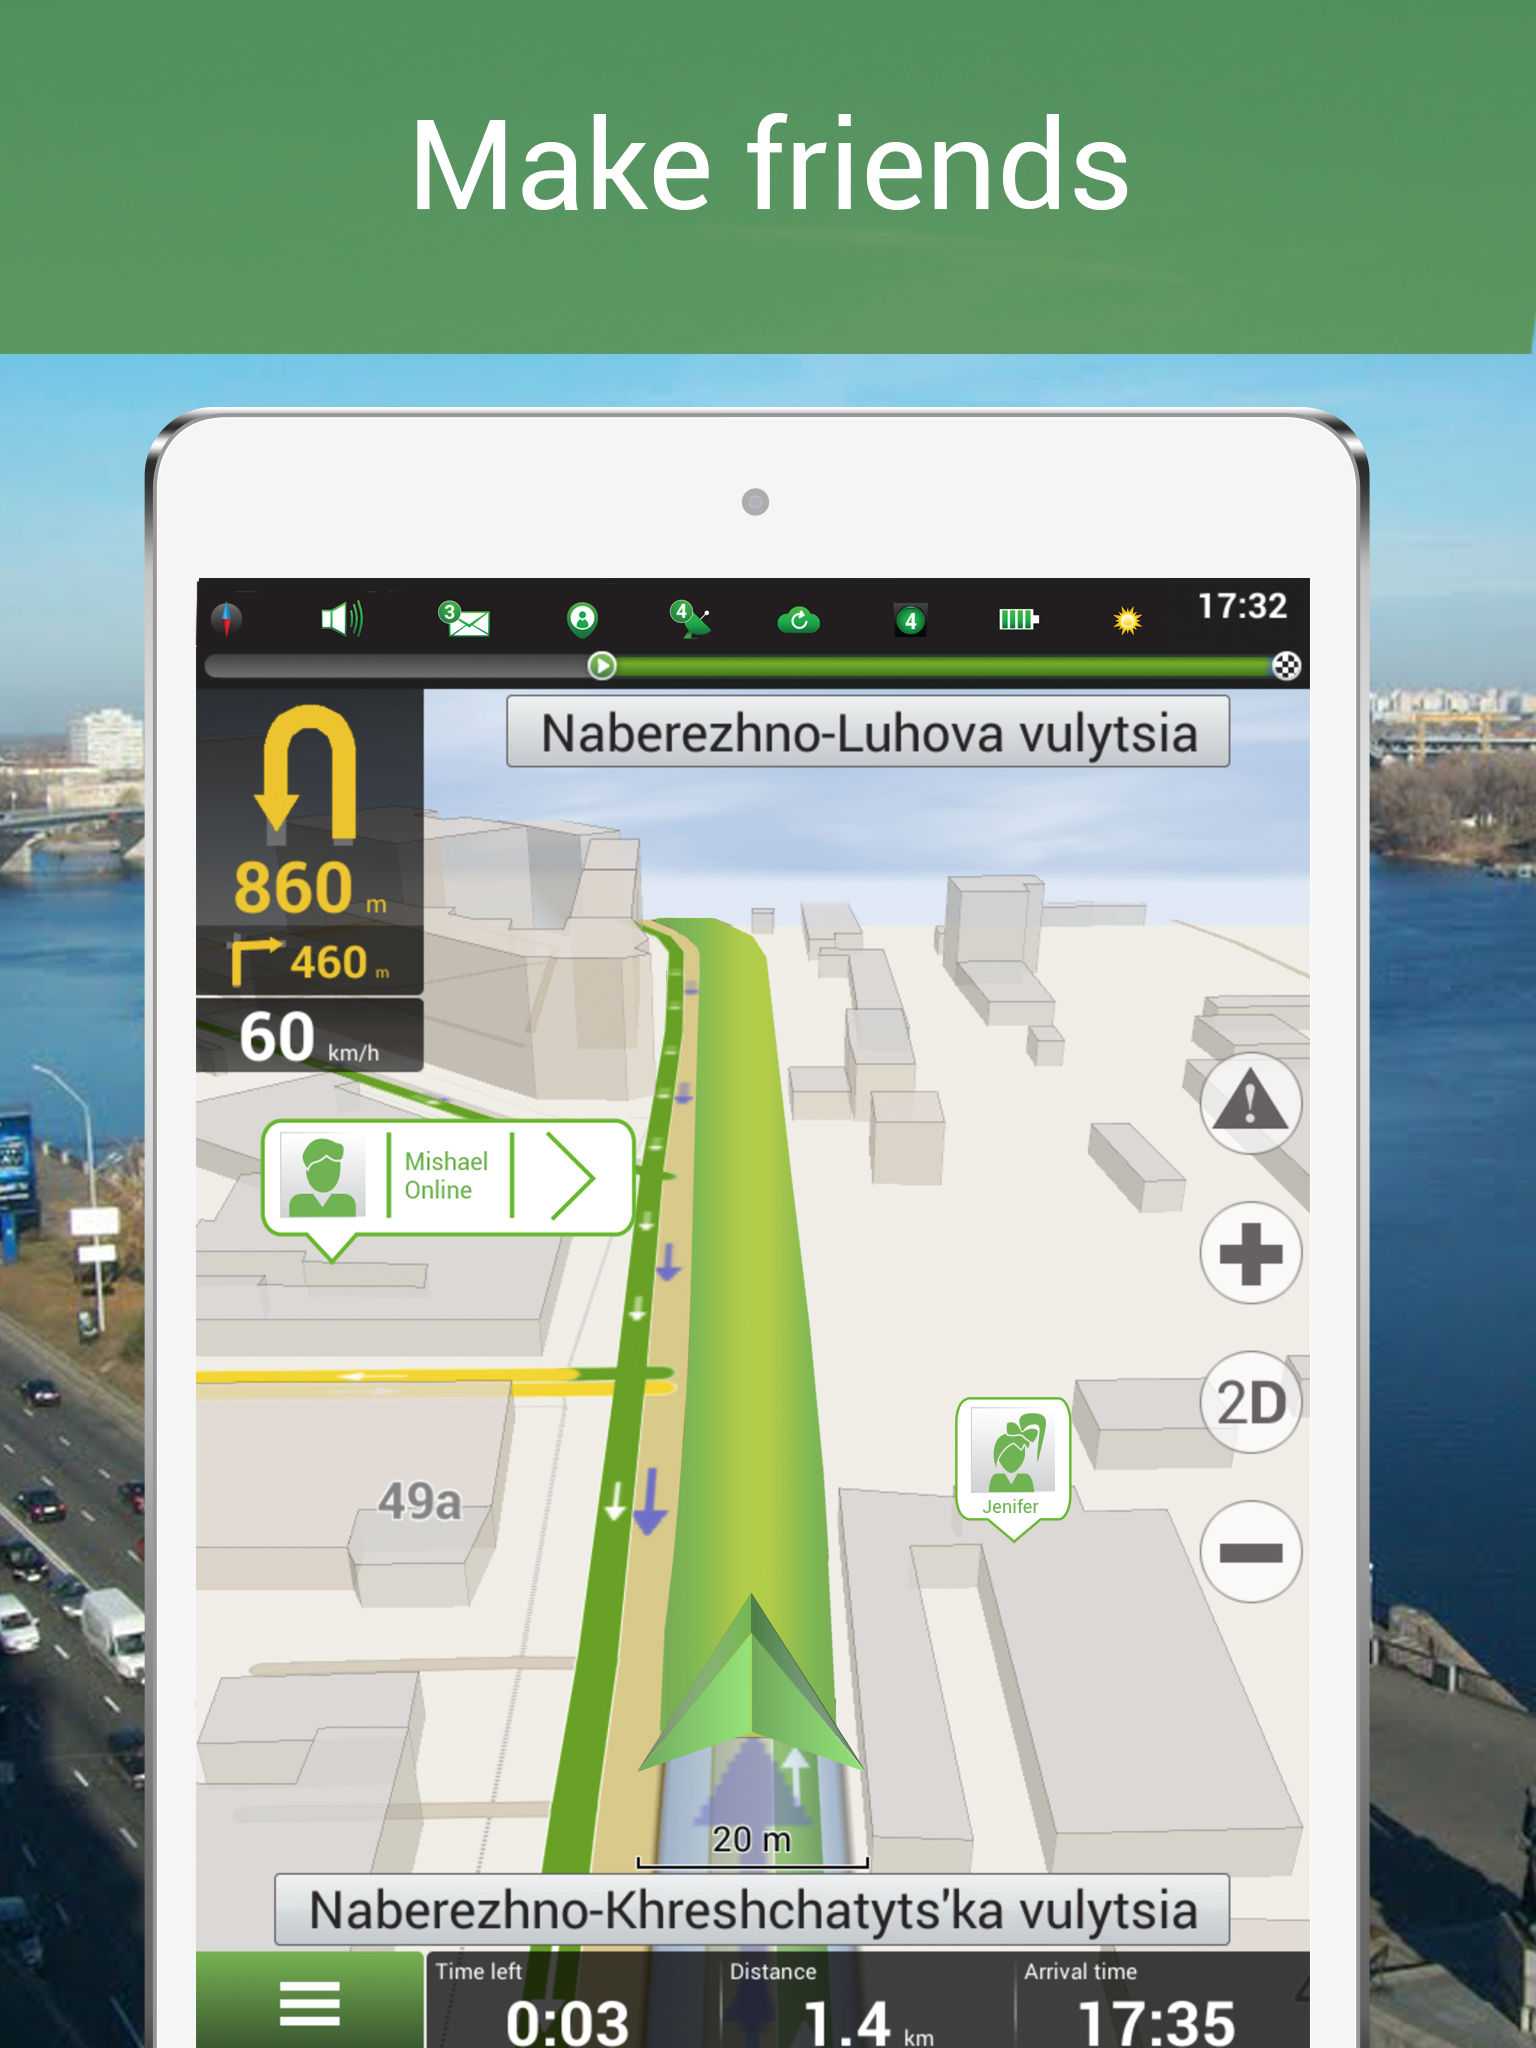 Навител навигатор версия 5 с детализированными картами России Беларуси Украины Казахстана Финляндии за 2011 год